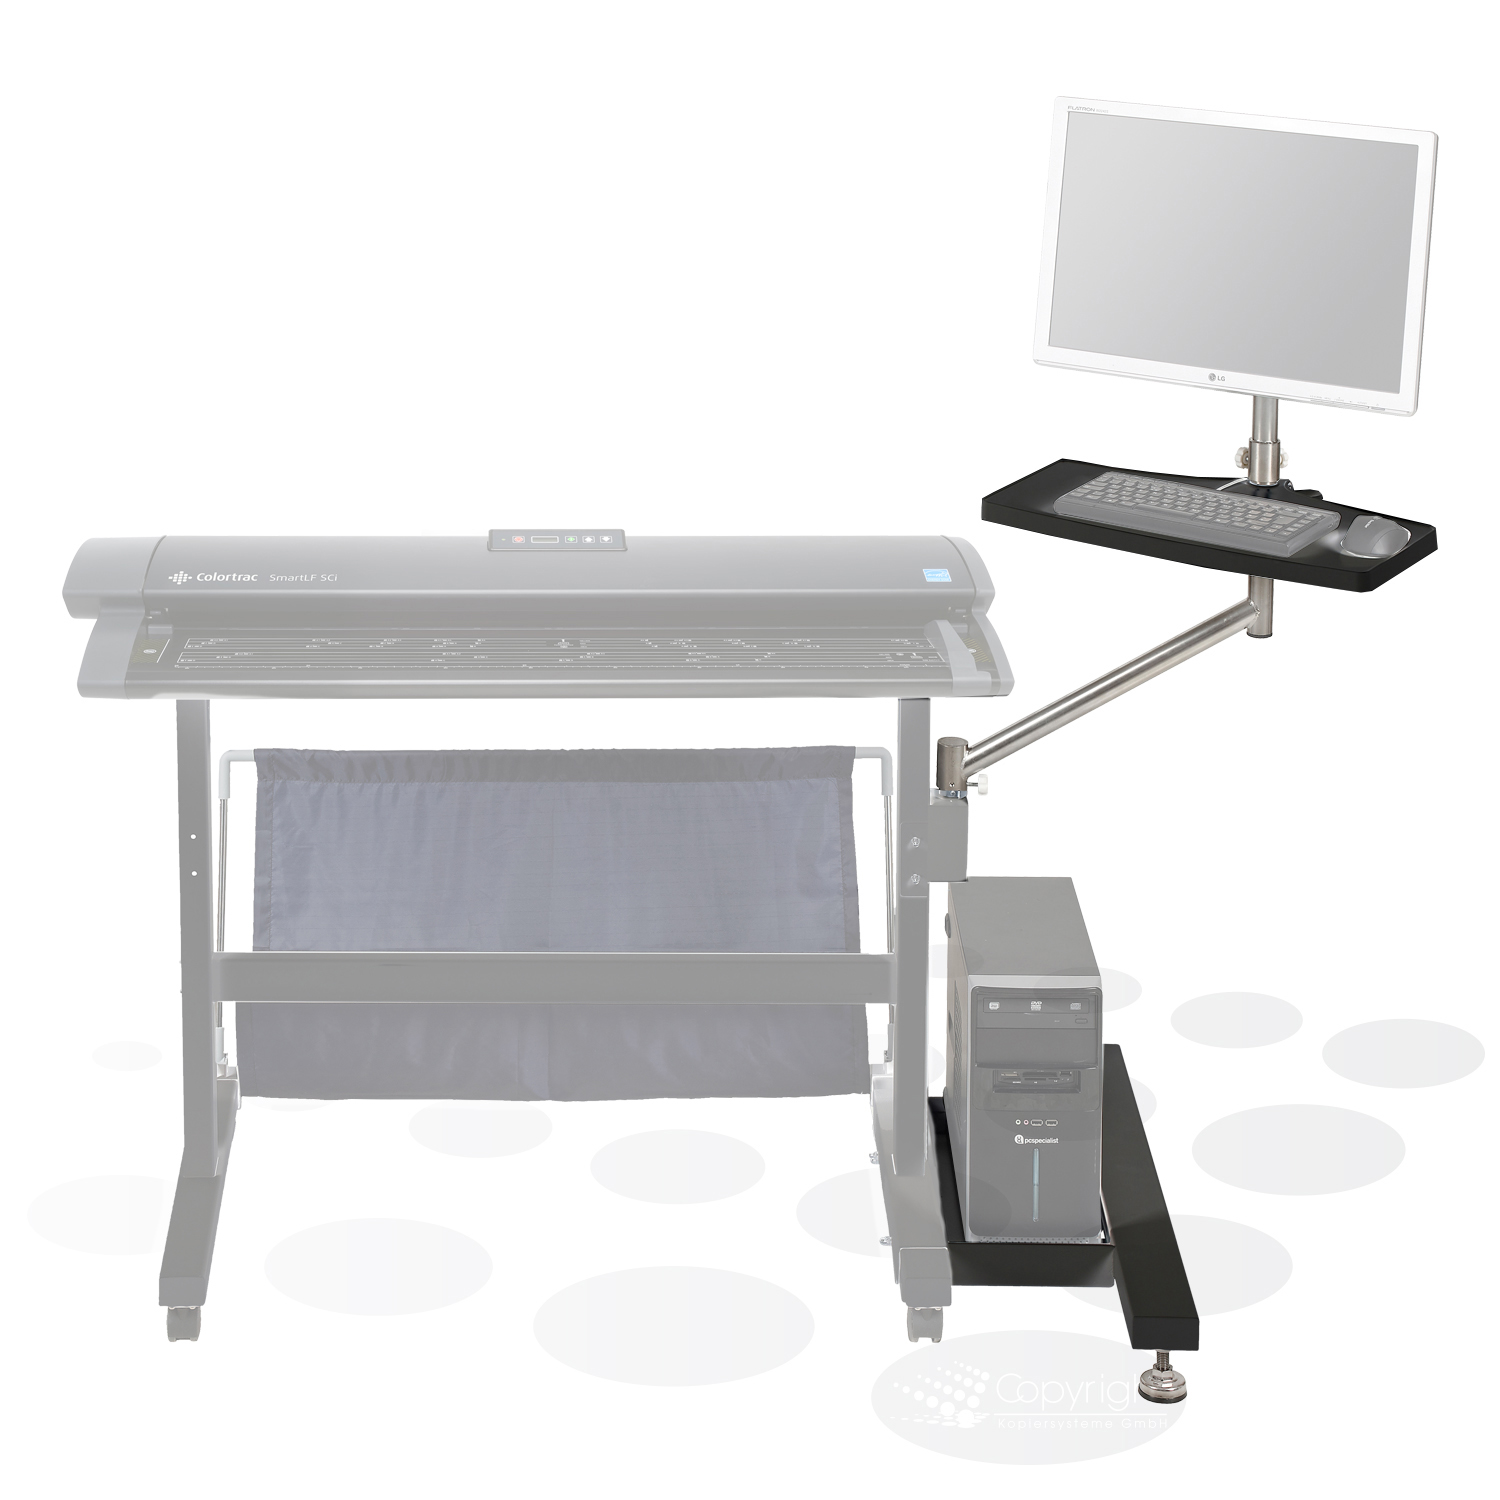 Colortrac PC-, Monitor- und Tastaturhalter für Standard Gestell SCi/SGi 25/36/42